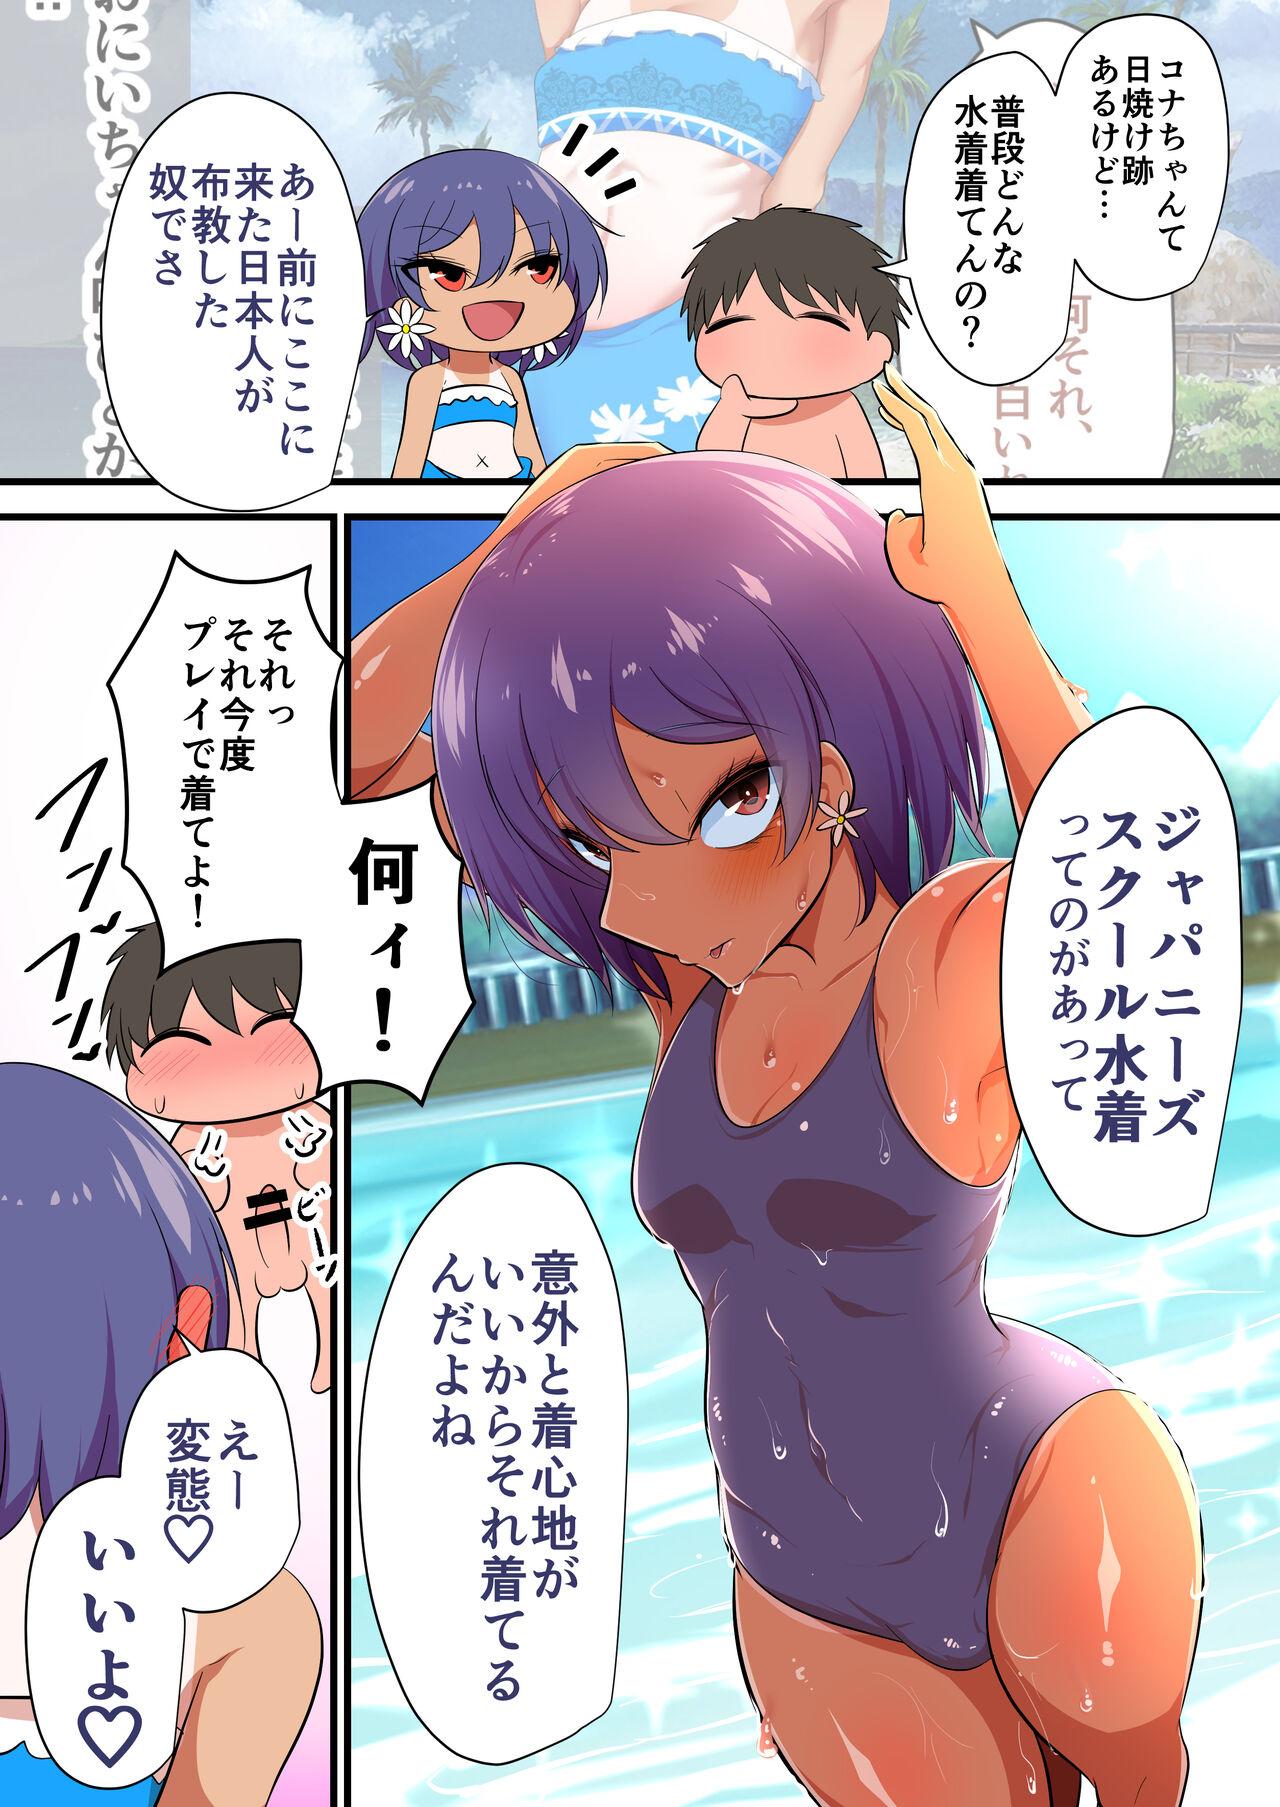 Urine Omake Manga Amateursex - Picture 3